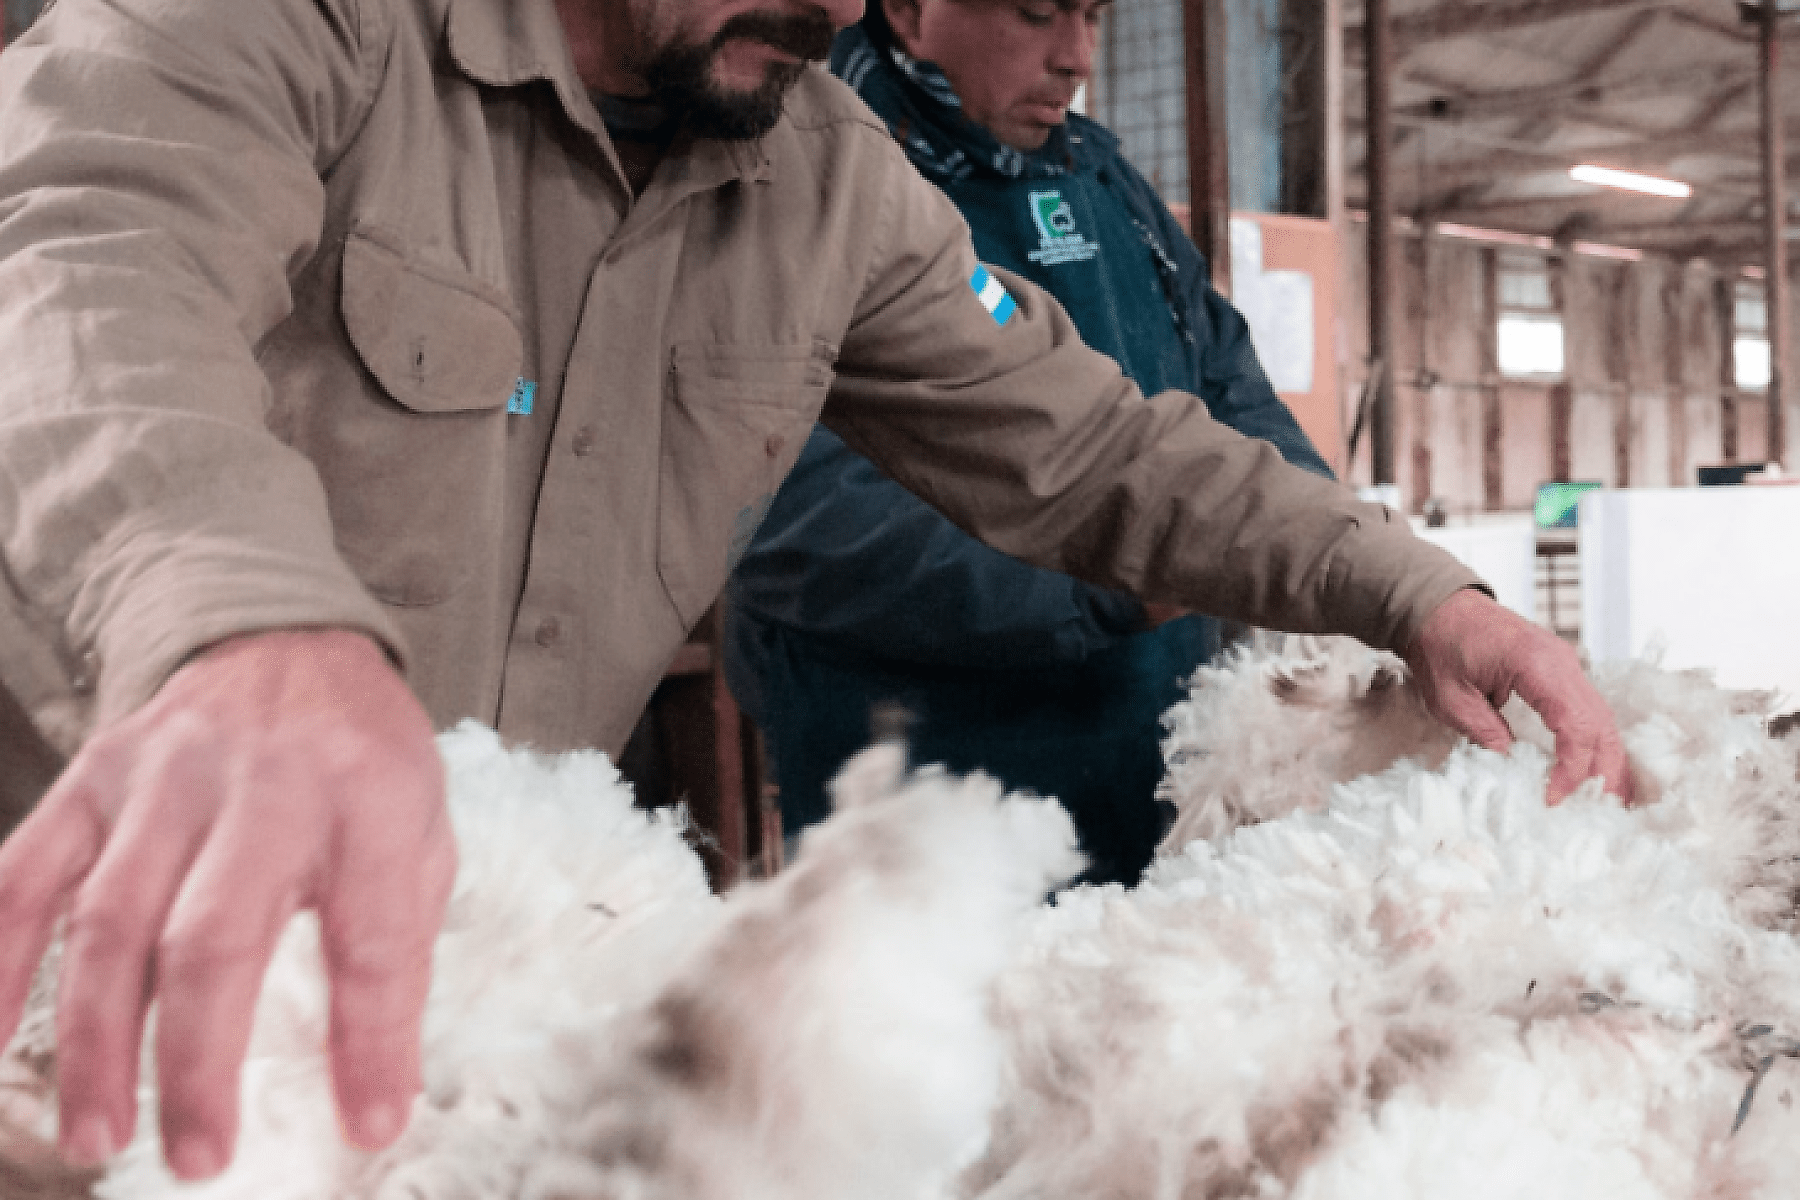 Argentina acordó con China la exportación de trigo, lana y menudencias bovinas